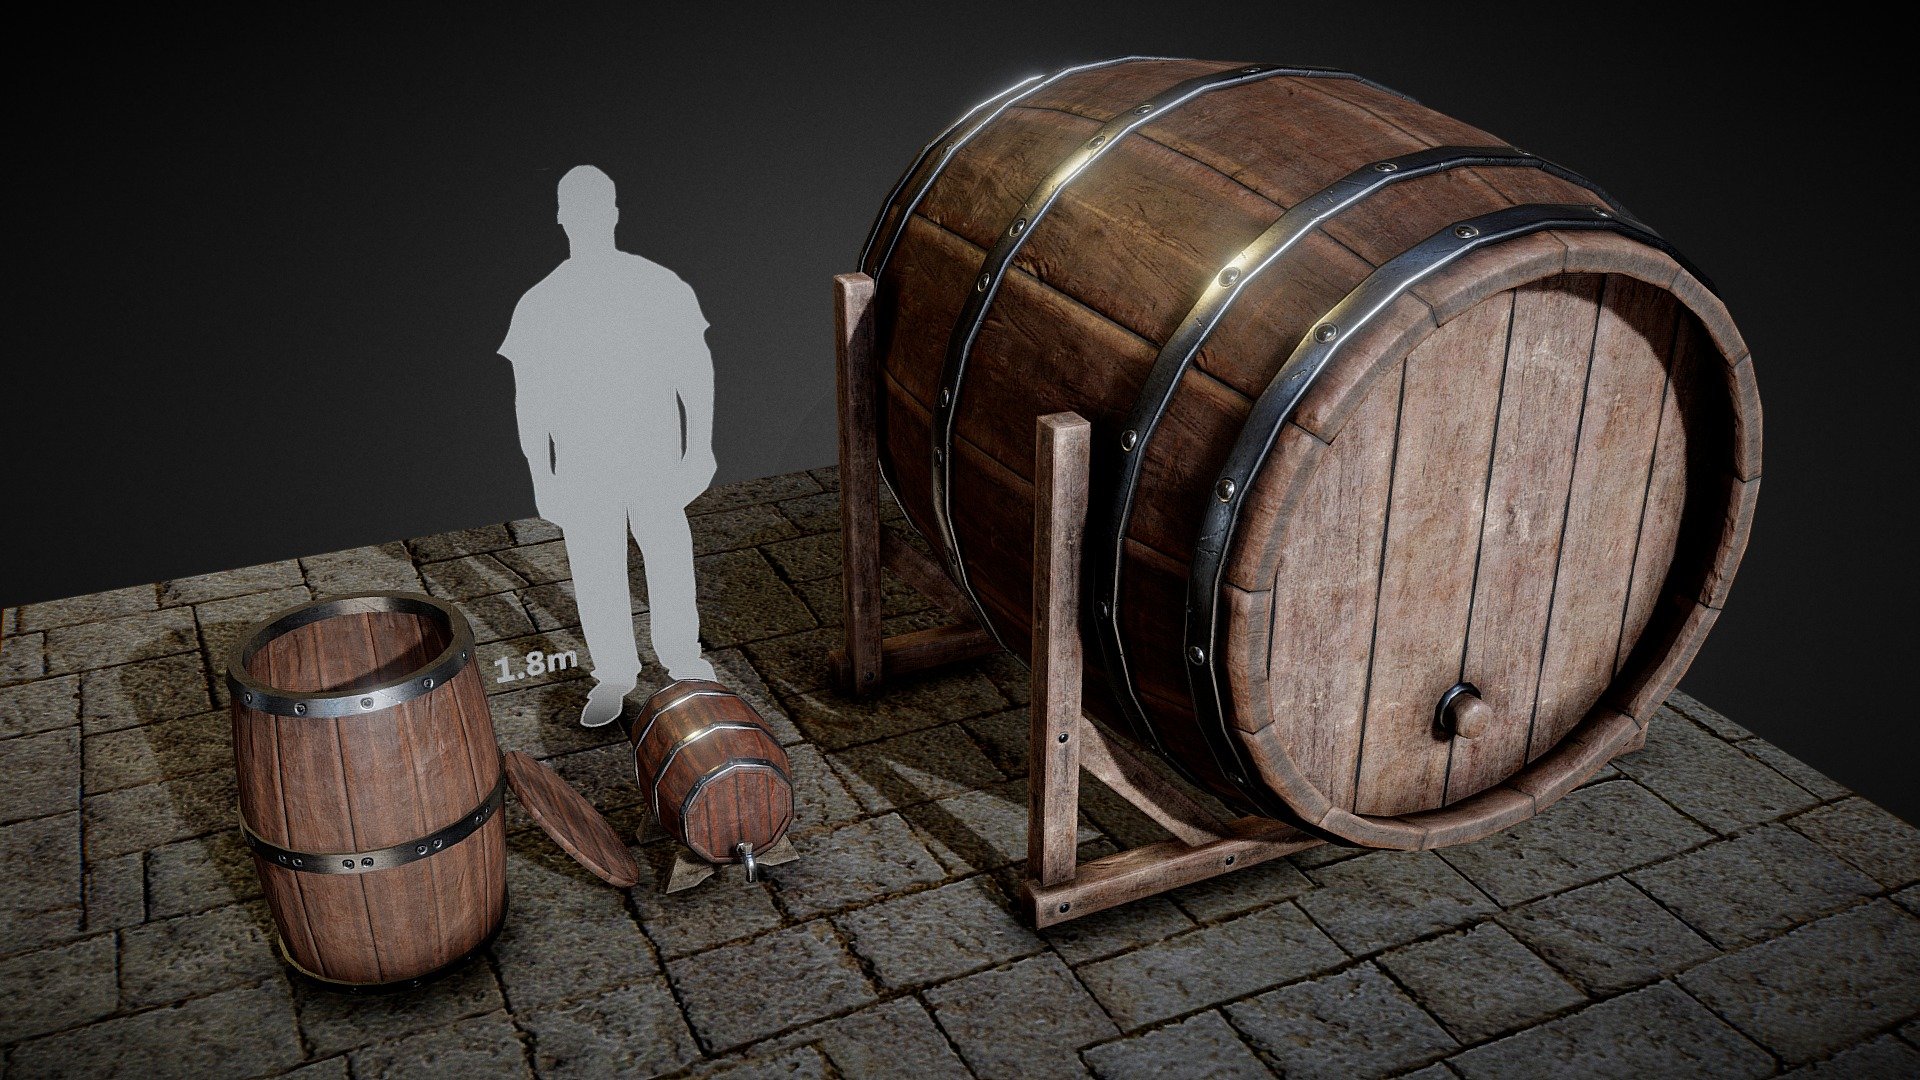 Wooden Barrels - 3D model by zeee7.